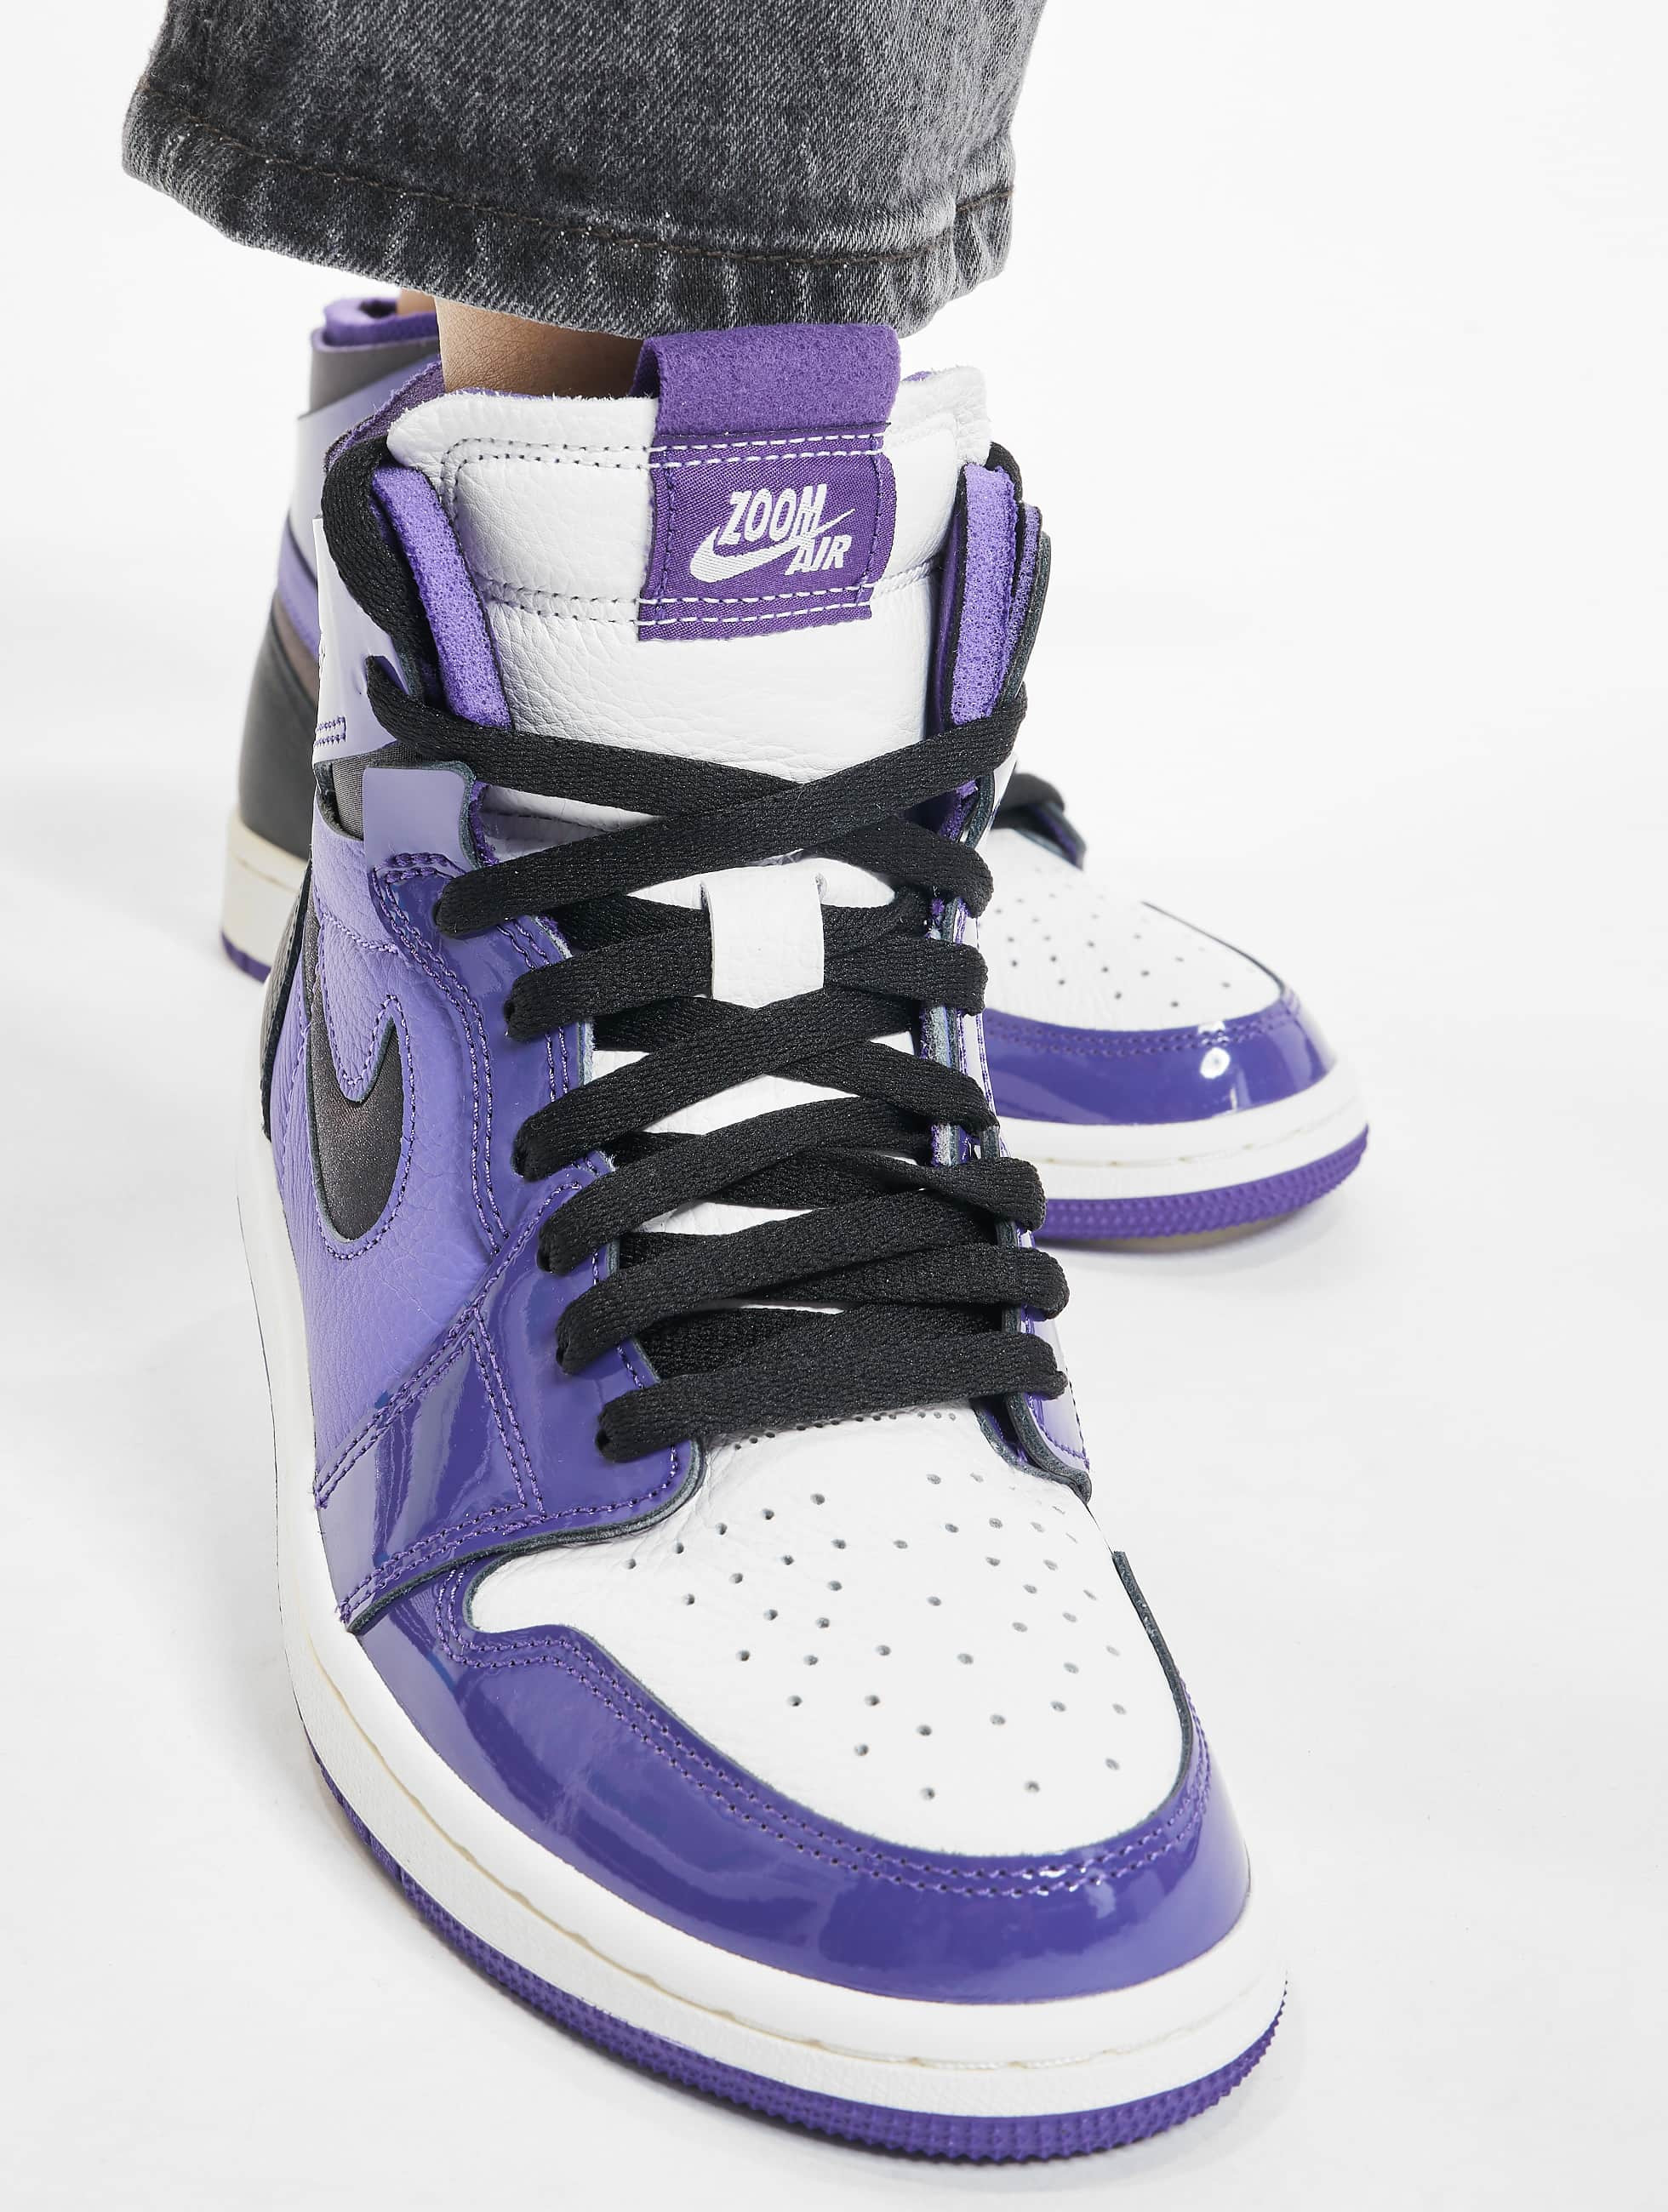 Symmetrie inhoudsopgave Ouderling Jordan schoen / sneaker 1 High Zoom Air CMFT Purple Patent in paars 891684